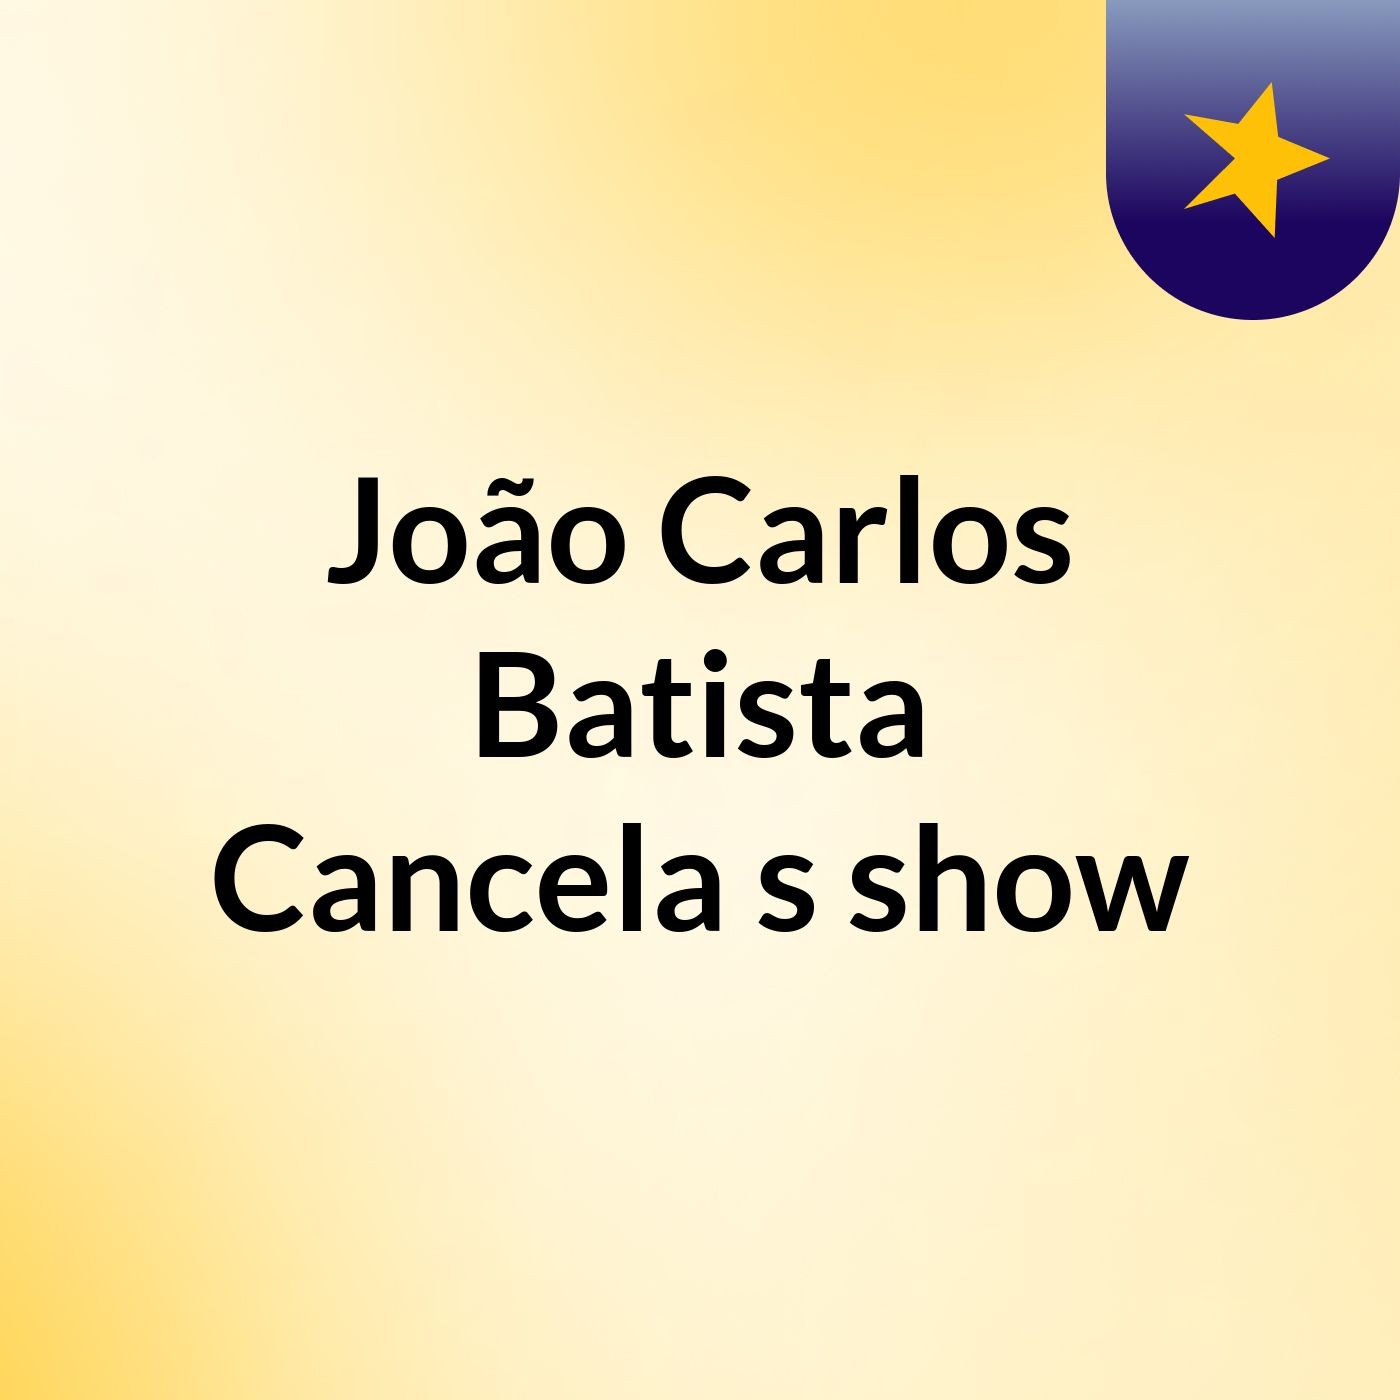 João Carlos Batista Cancela's show